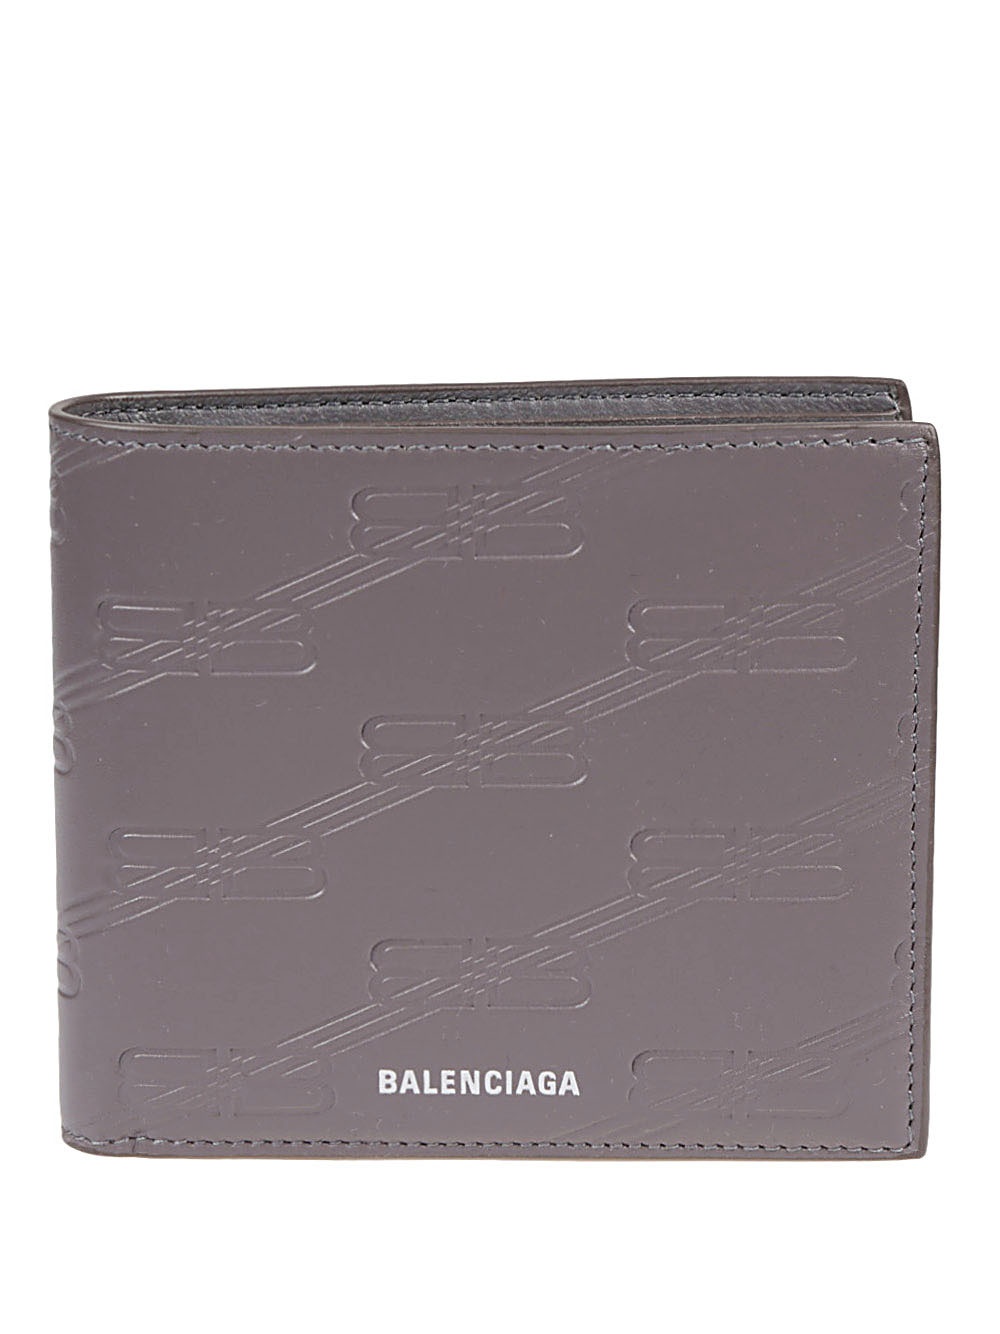 BALENCIAGA - Wallet With Logo Balenciaga